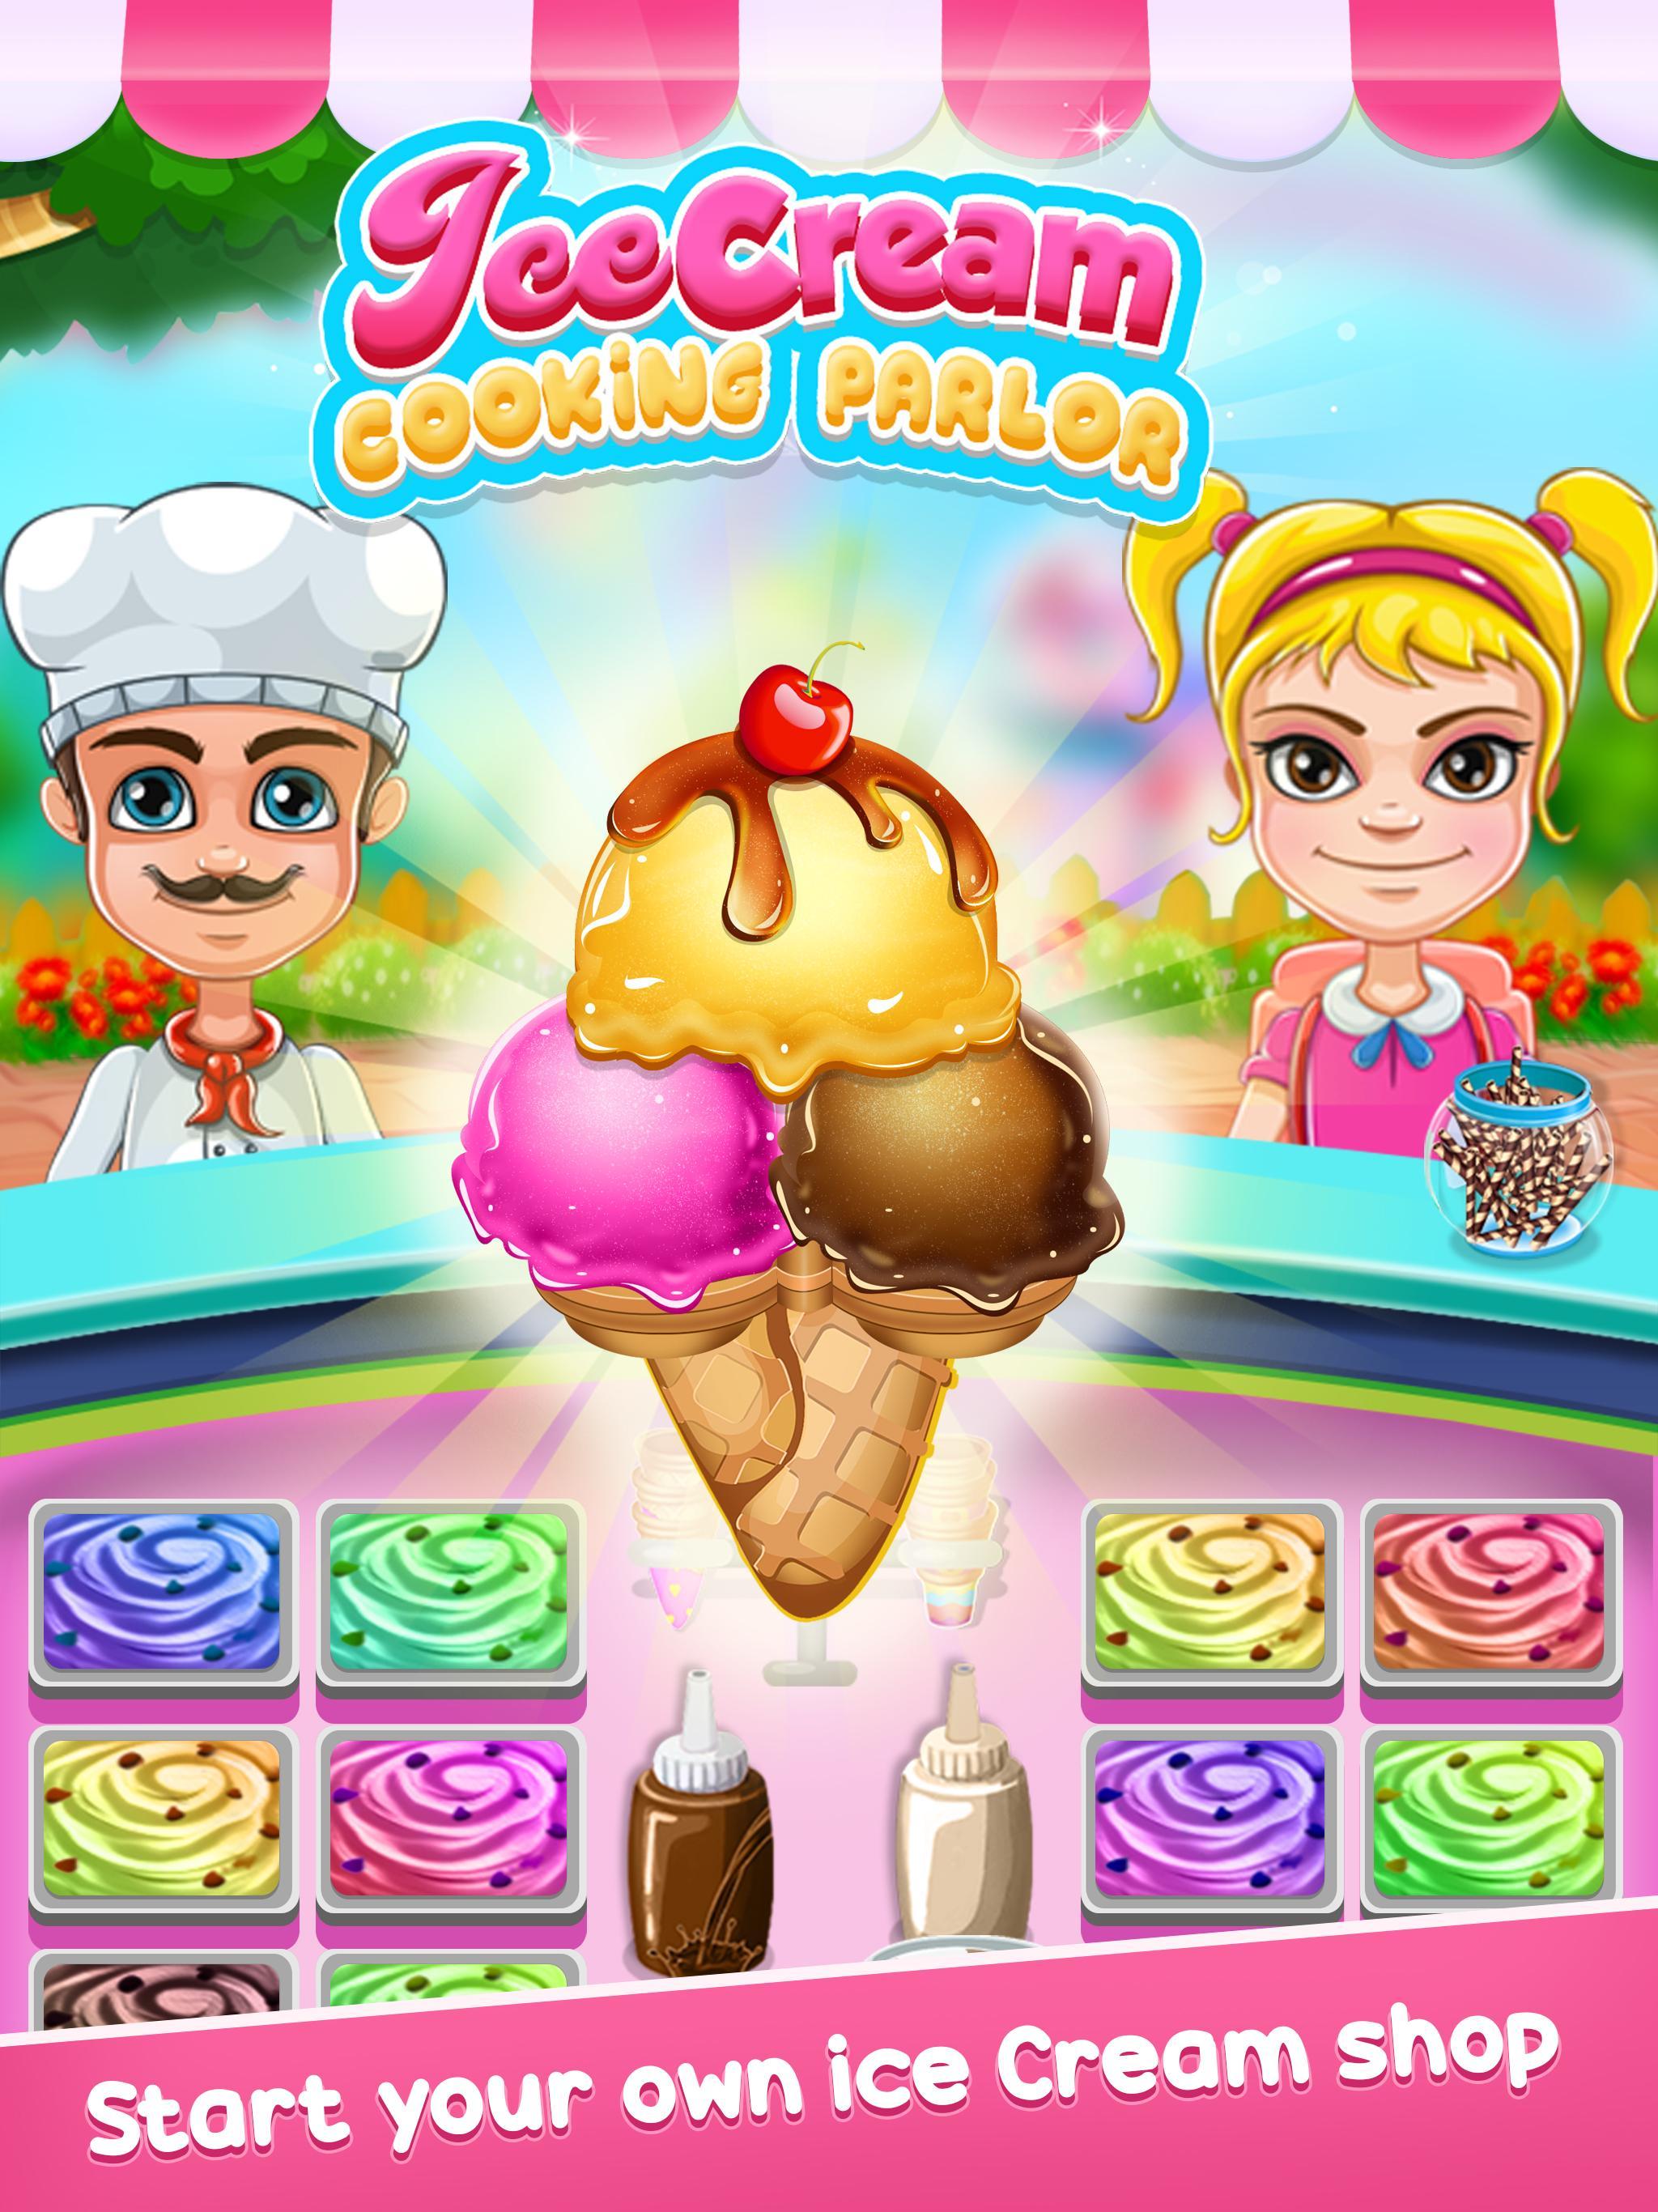 Mi Hielo Crema Sala For Android Apk Download - watch el simulador de venta de helados roblox ice cream